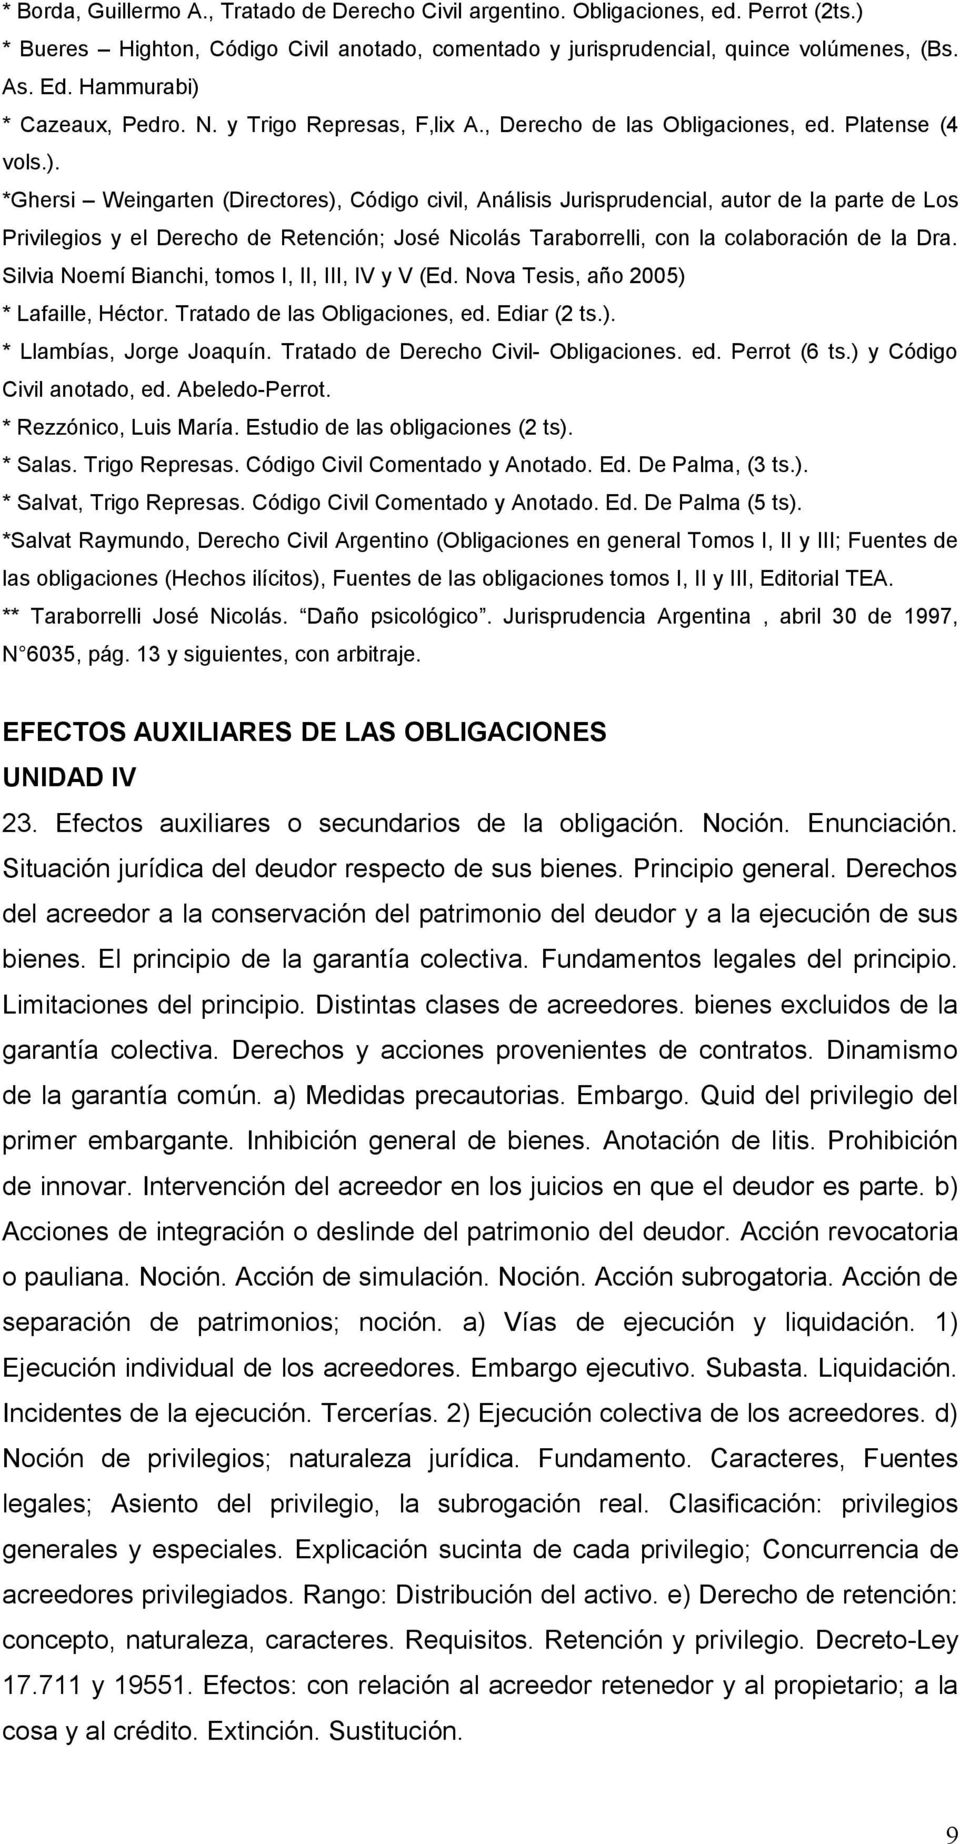 * Cazeaux, Pedro. N. y Trigo Represas, F lix A., Derecho de las Obligaciones, ed. Platense (4 vols.).